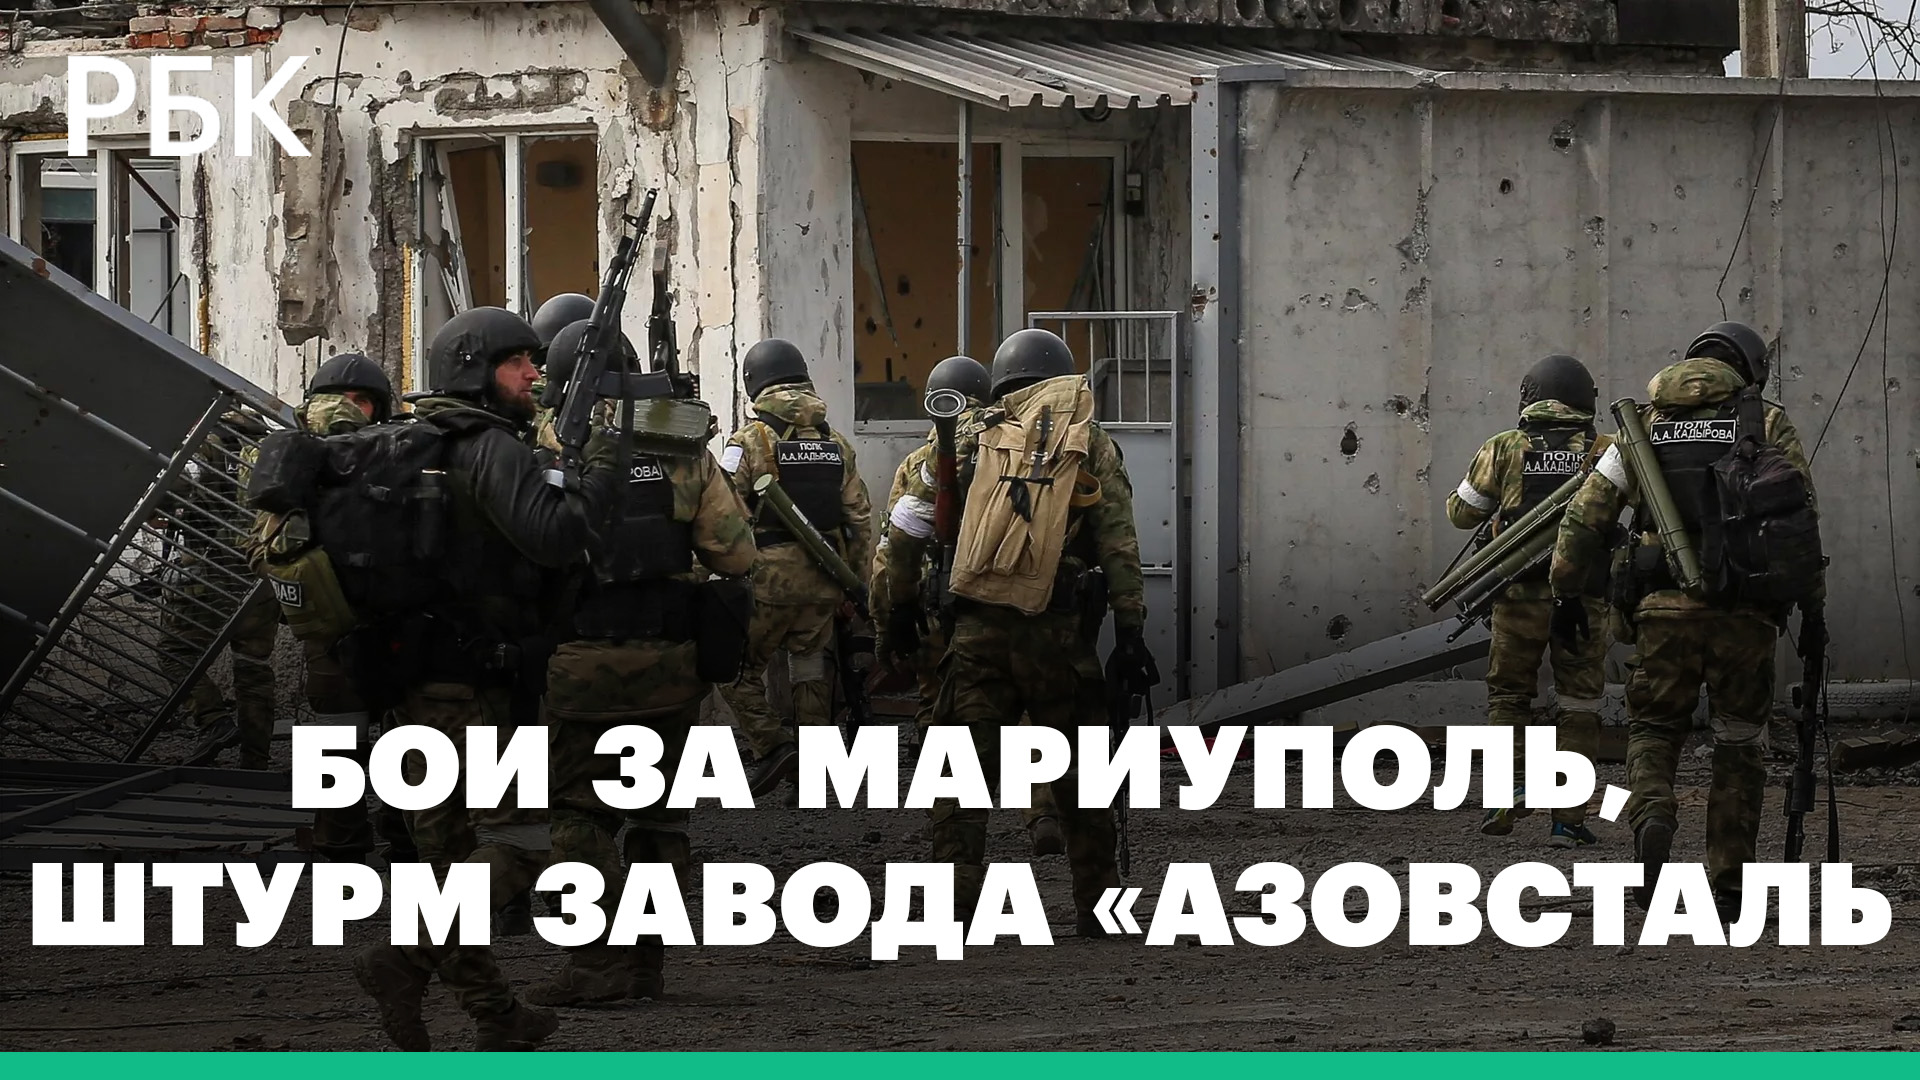 Бои за Мариуполь и штурм завода «Азовсталь»: как выглядит расстановка сил